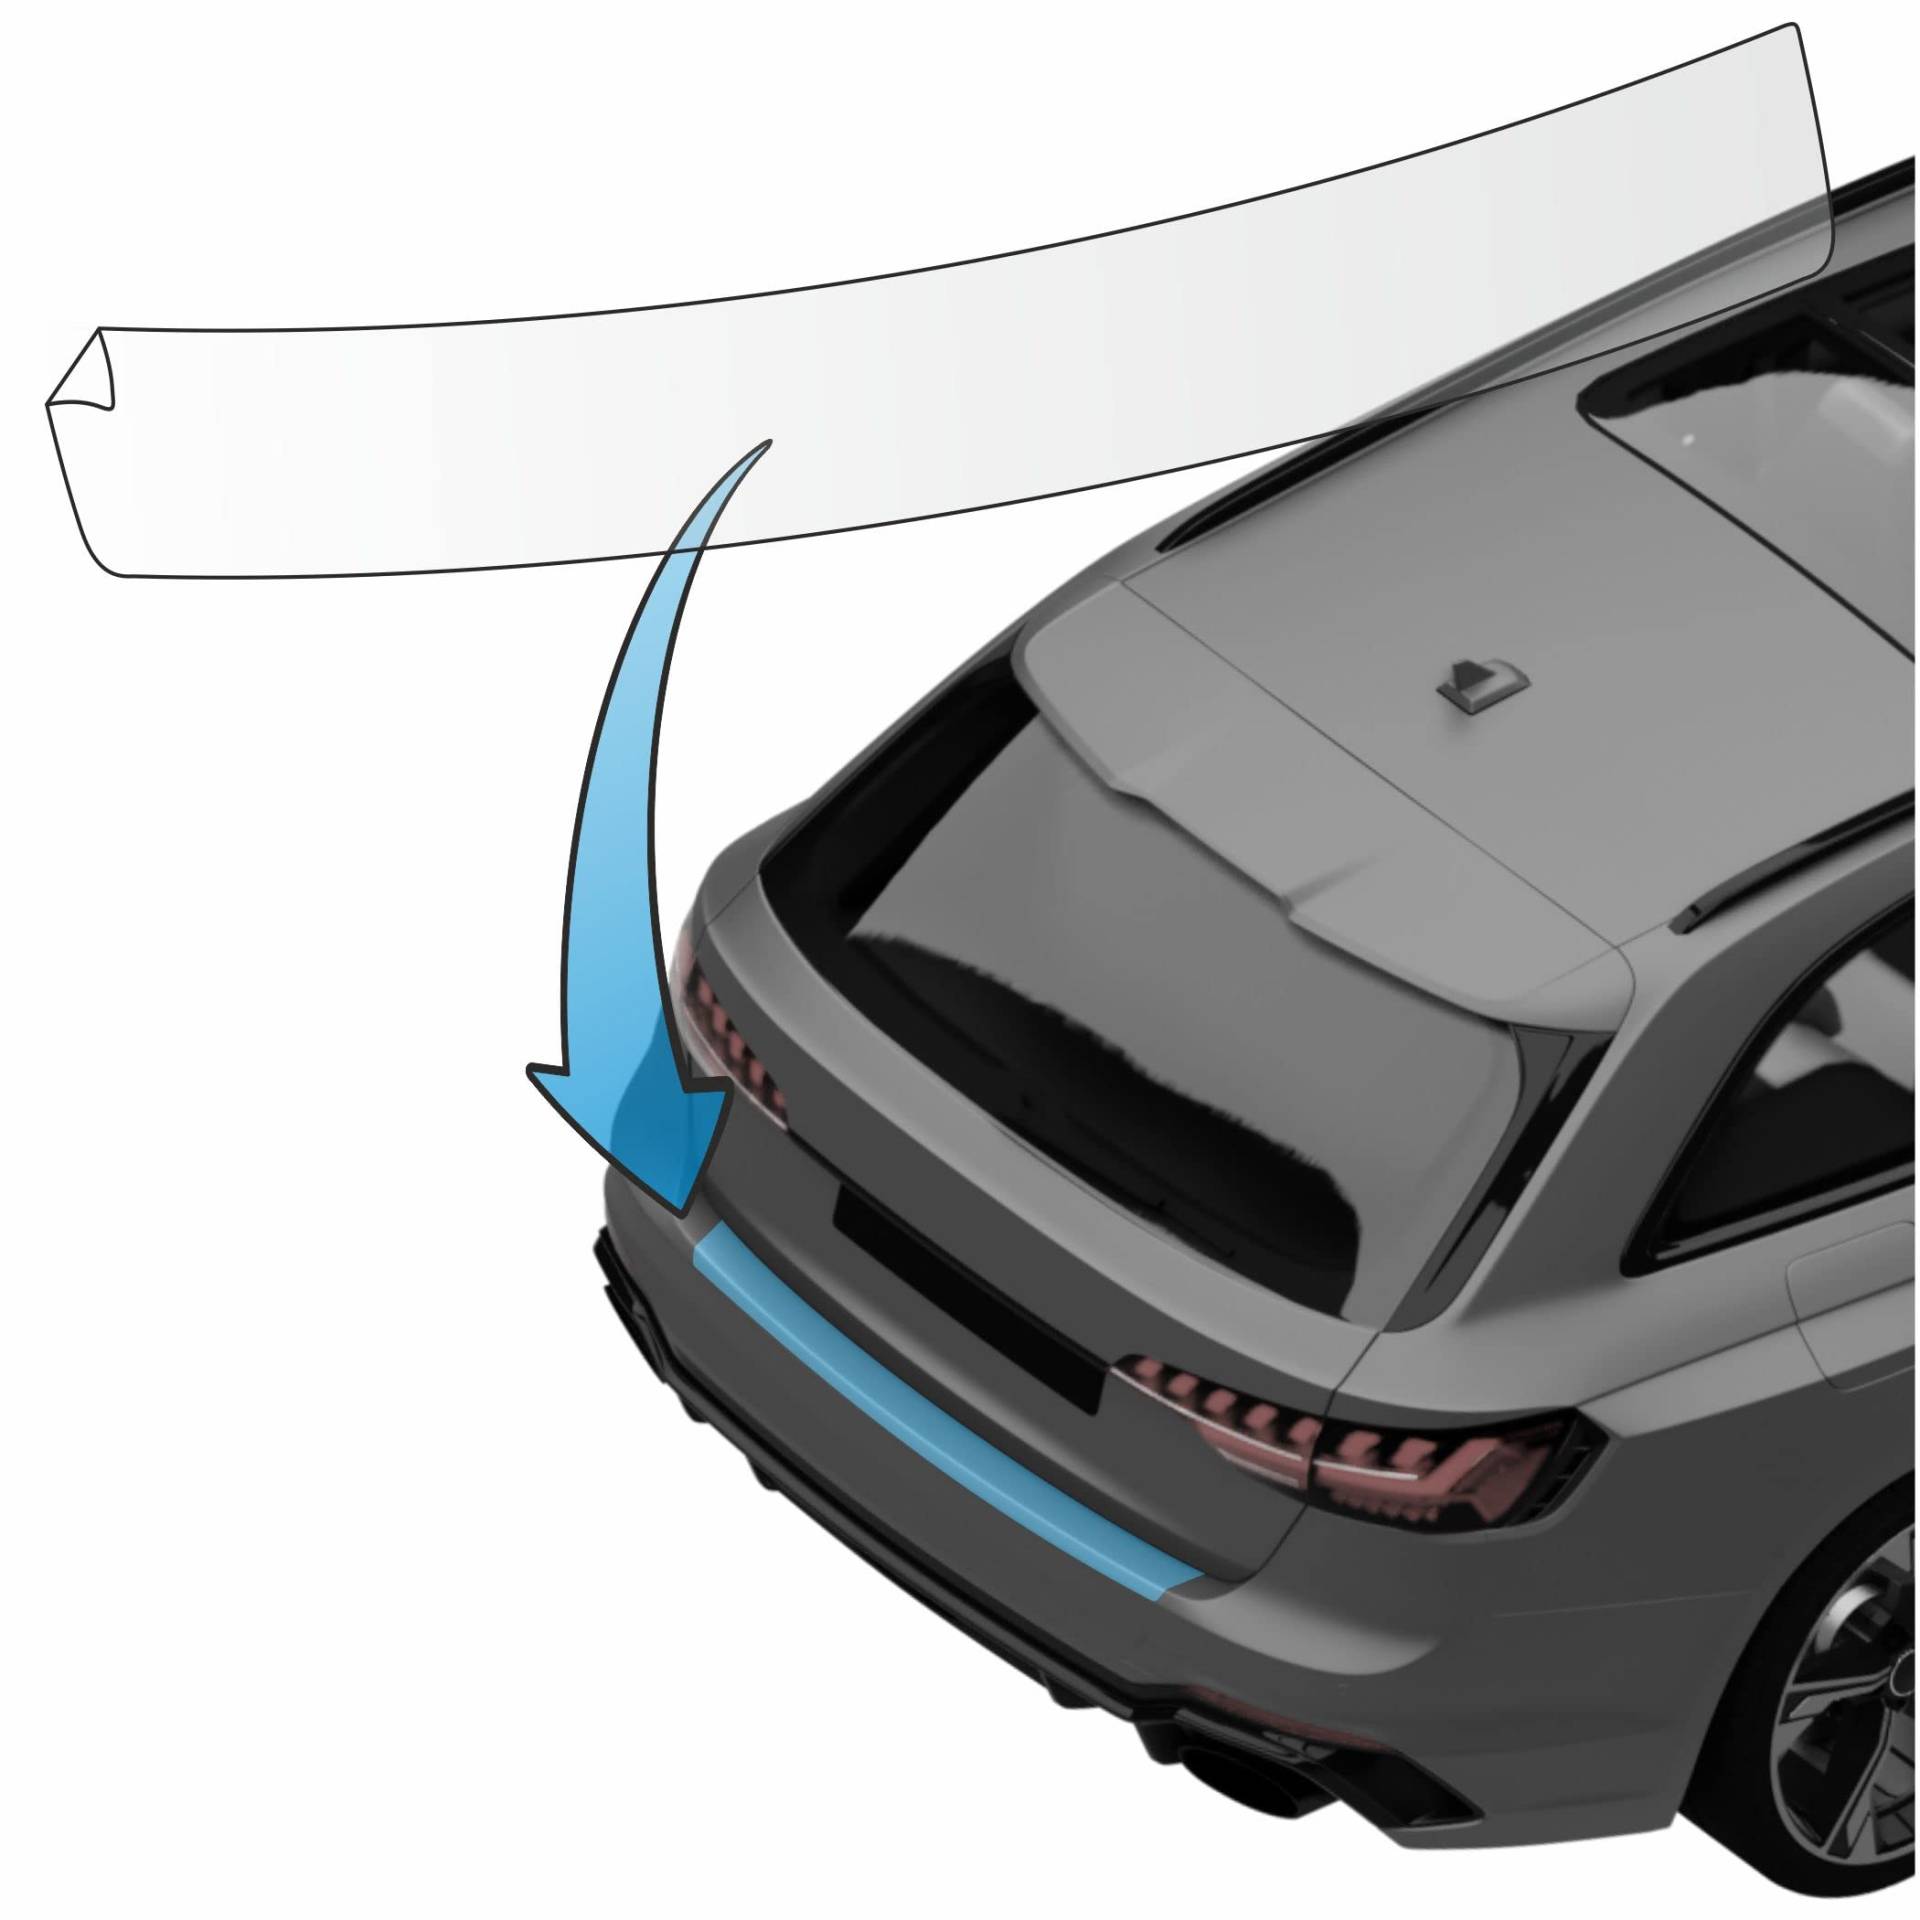 MisterLacky – Lackschutzfolie mit Rakel als Ladekantenschutz Folie passend für Audi A4 Avant (IV) Typ B8/8K, BJ 05/2008-11/2011 in transparent (320µm) von Lackschutzshop